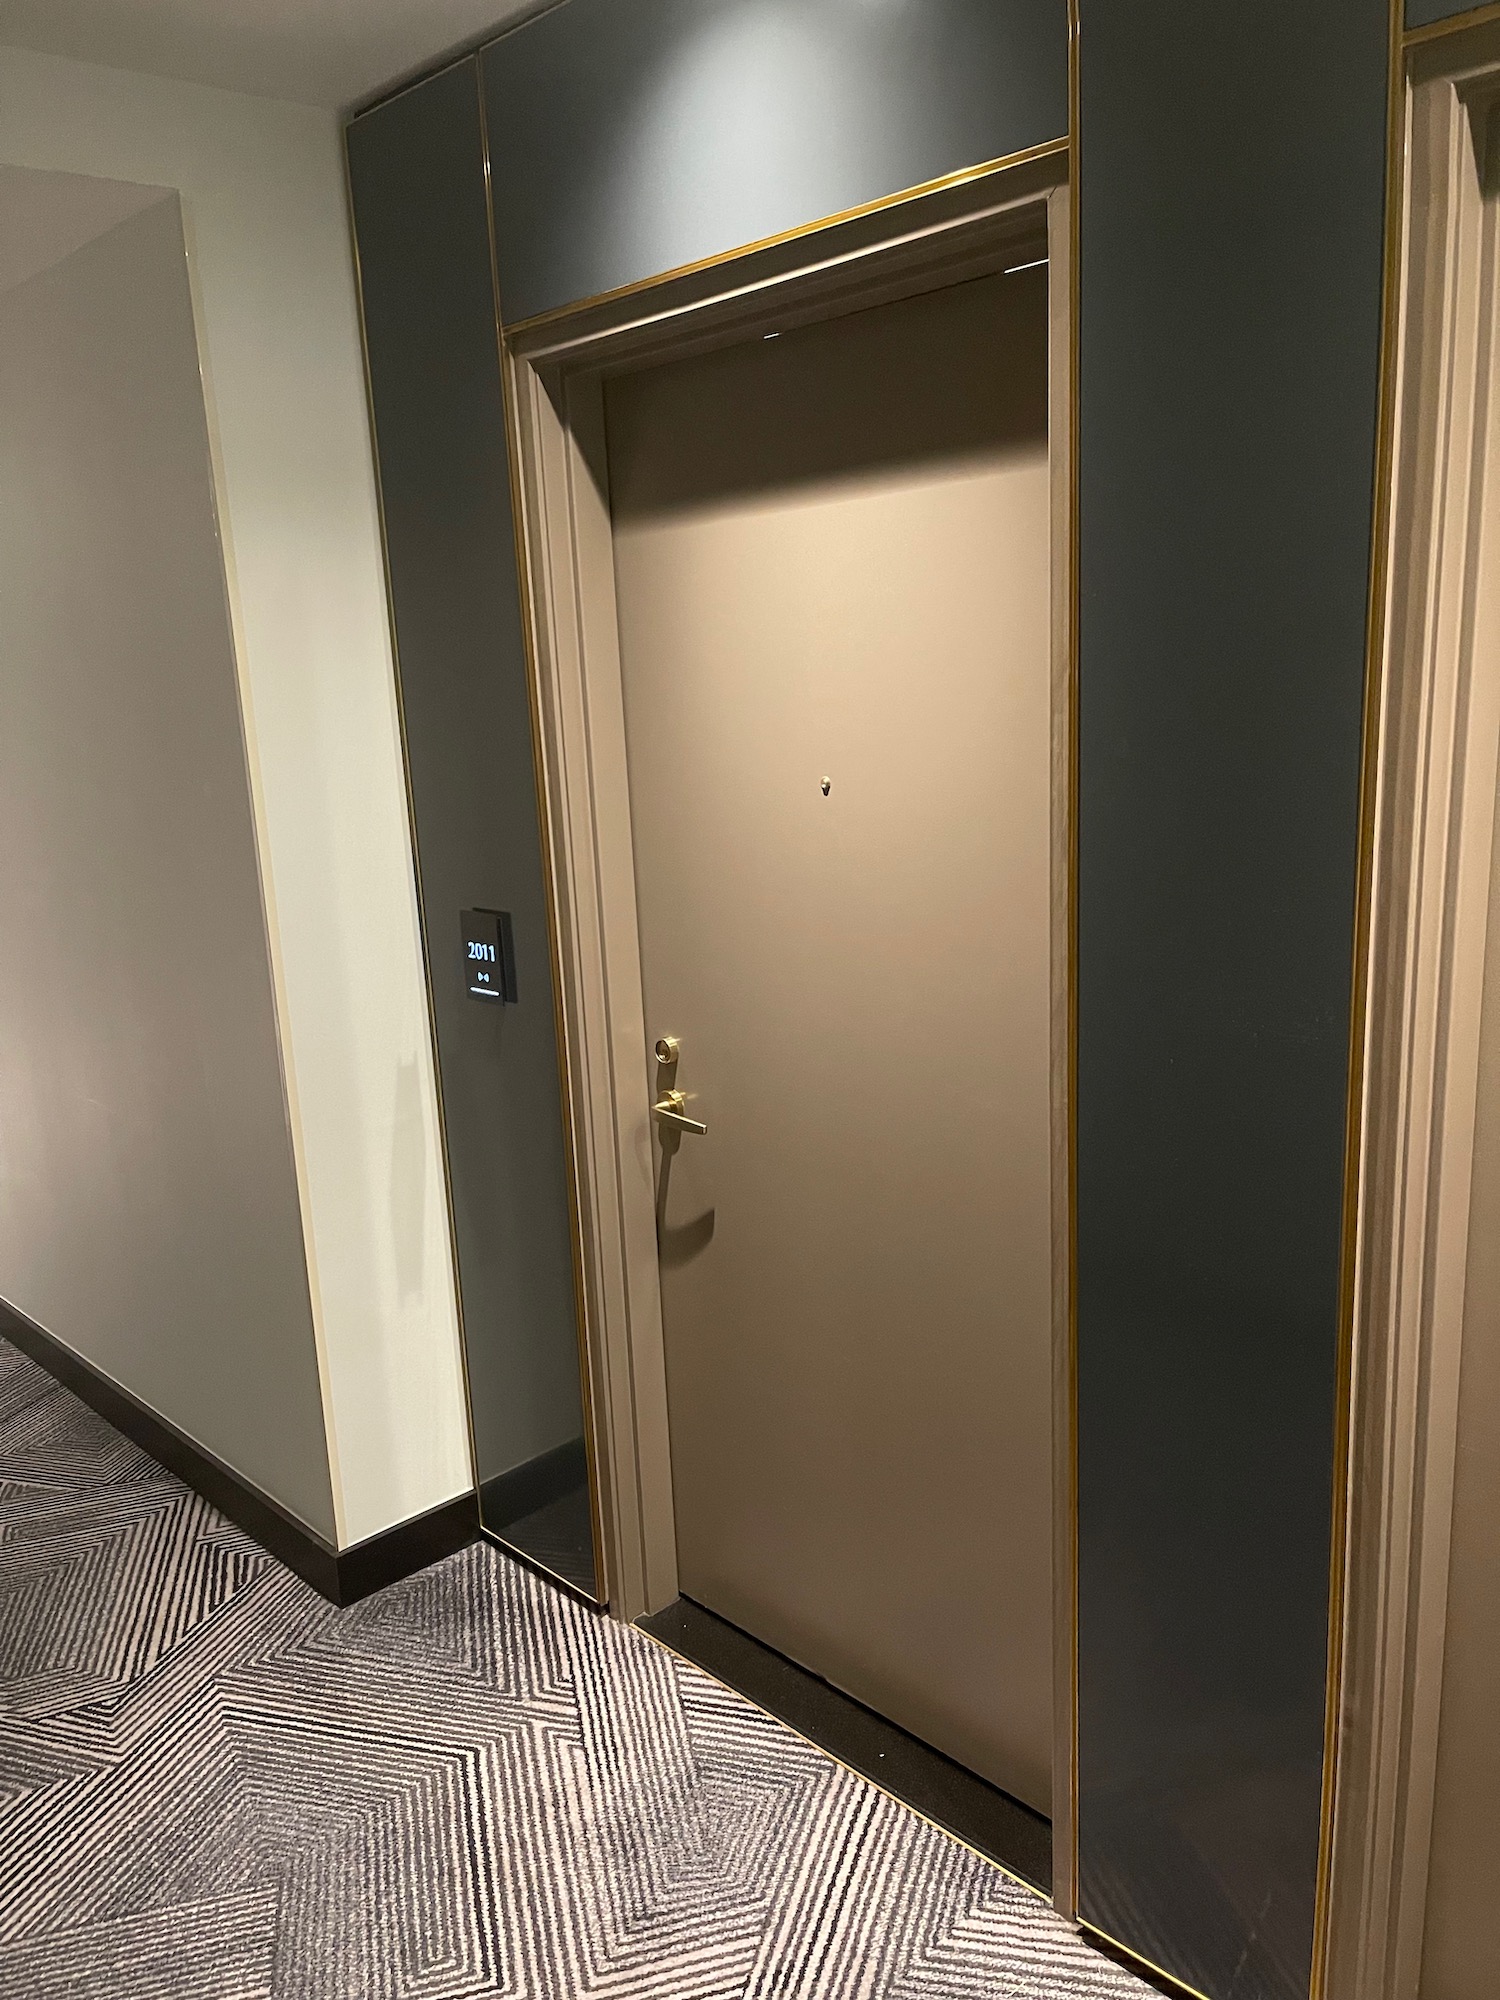 a door in a room